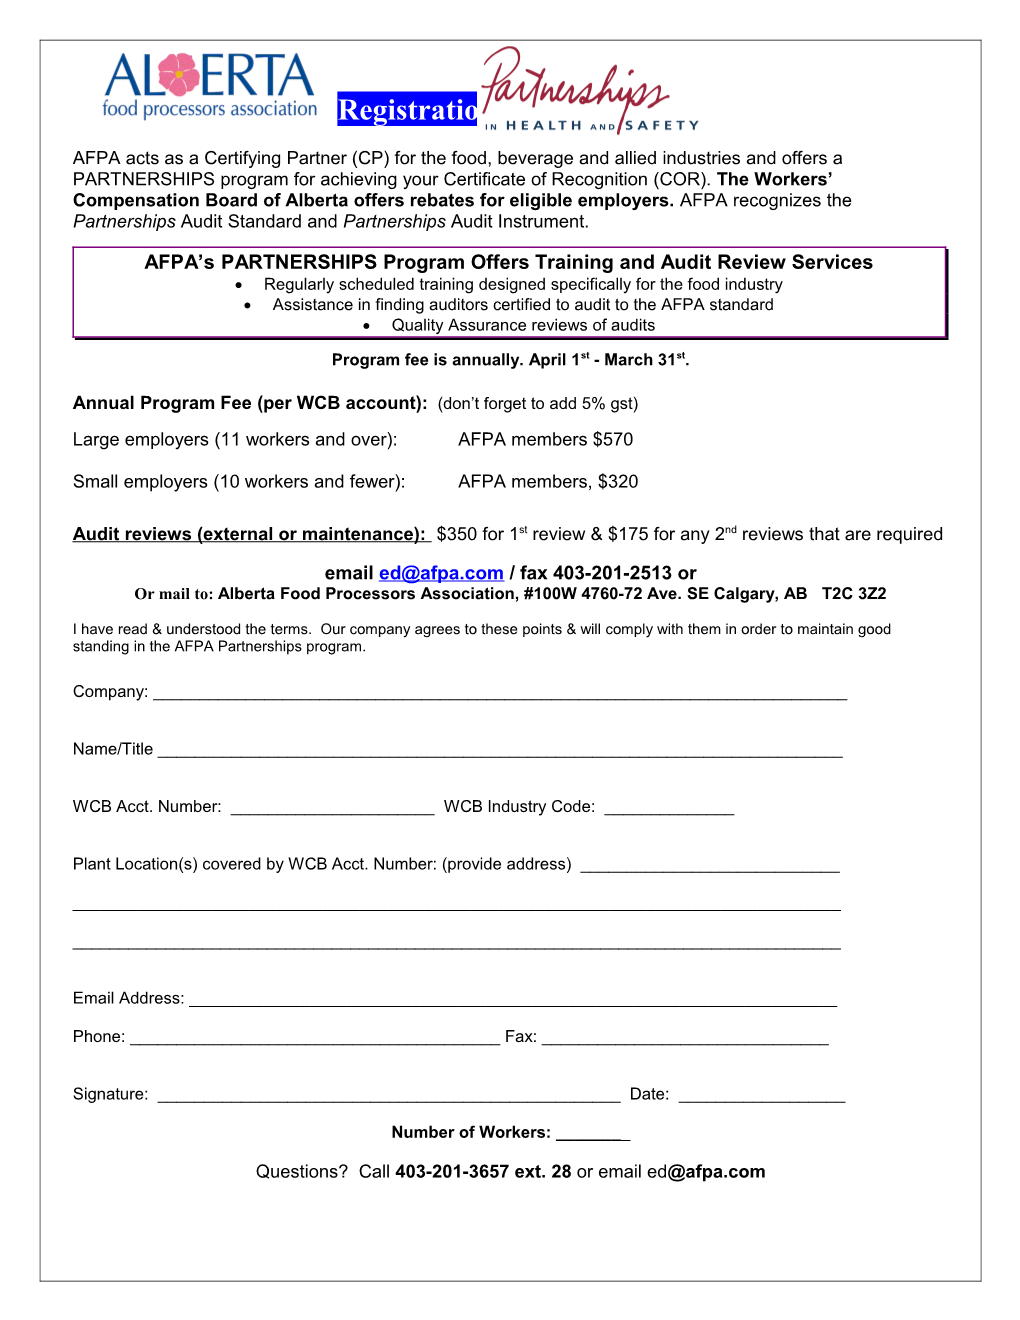 Afpa Pir Registration Form for Program Year 2000